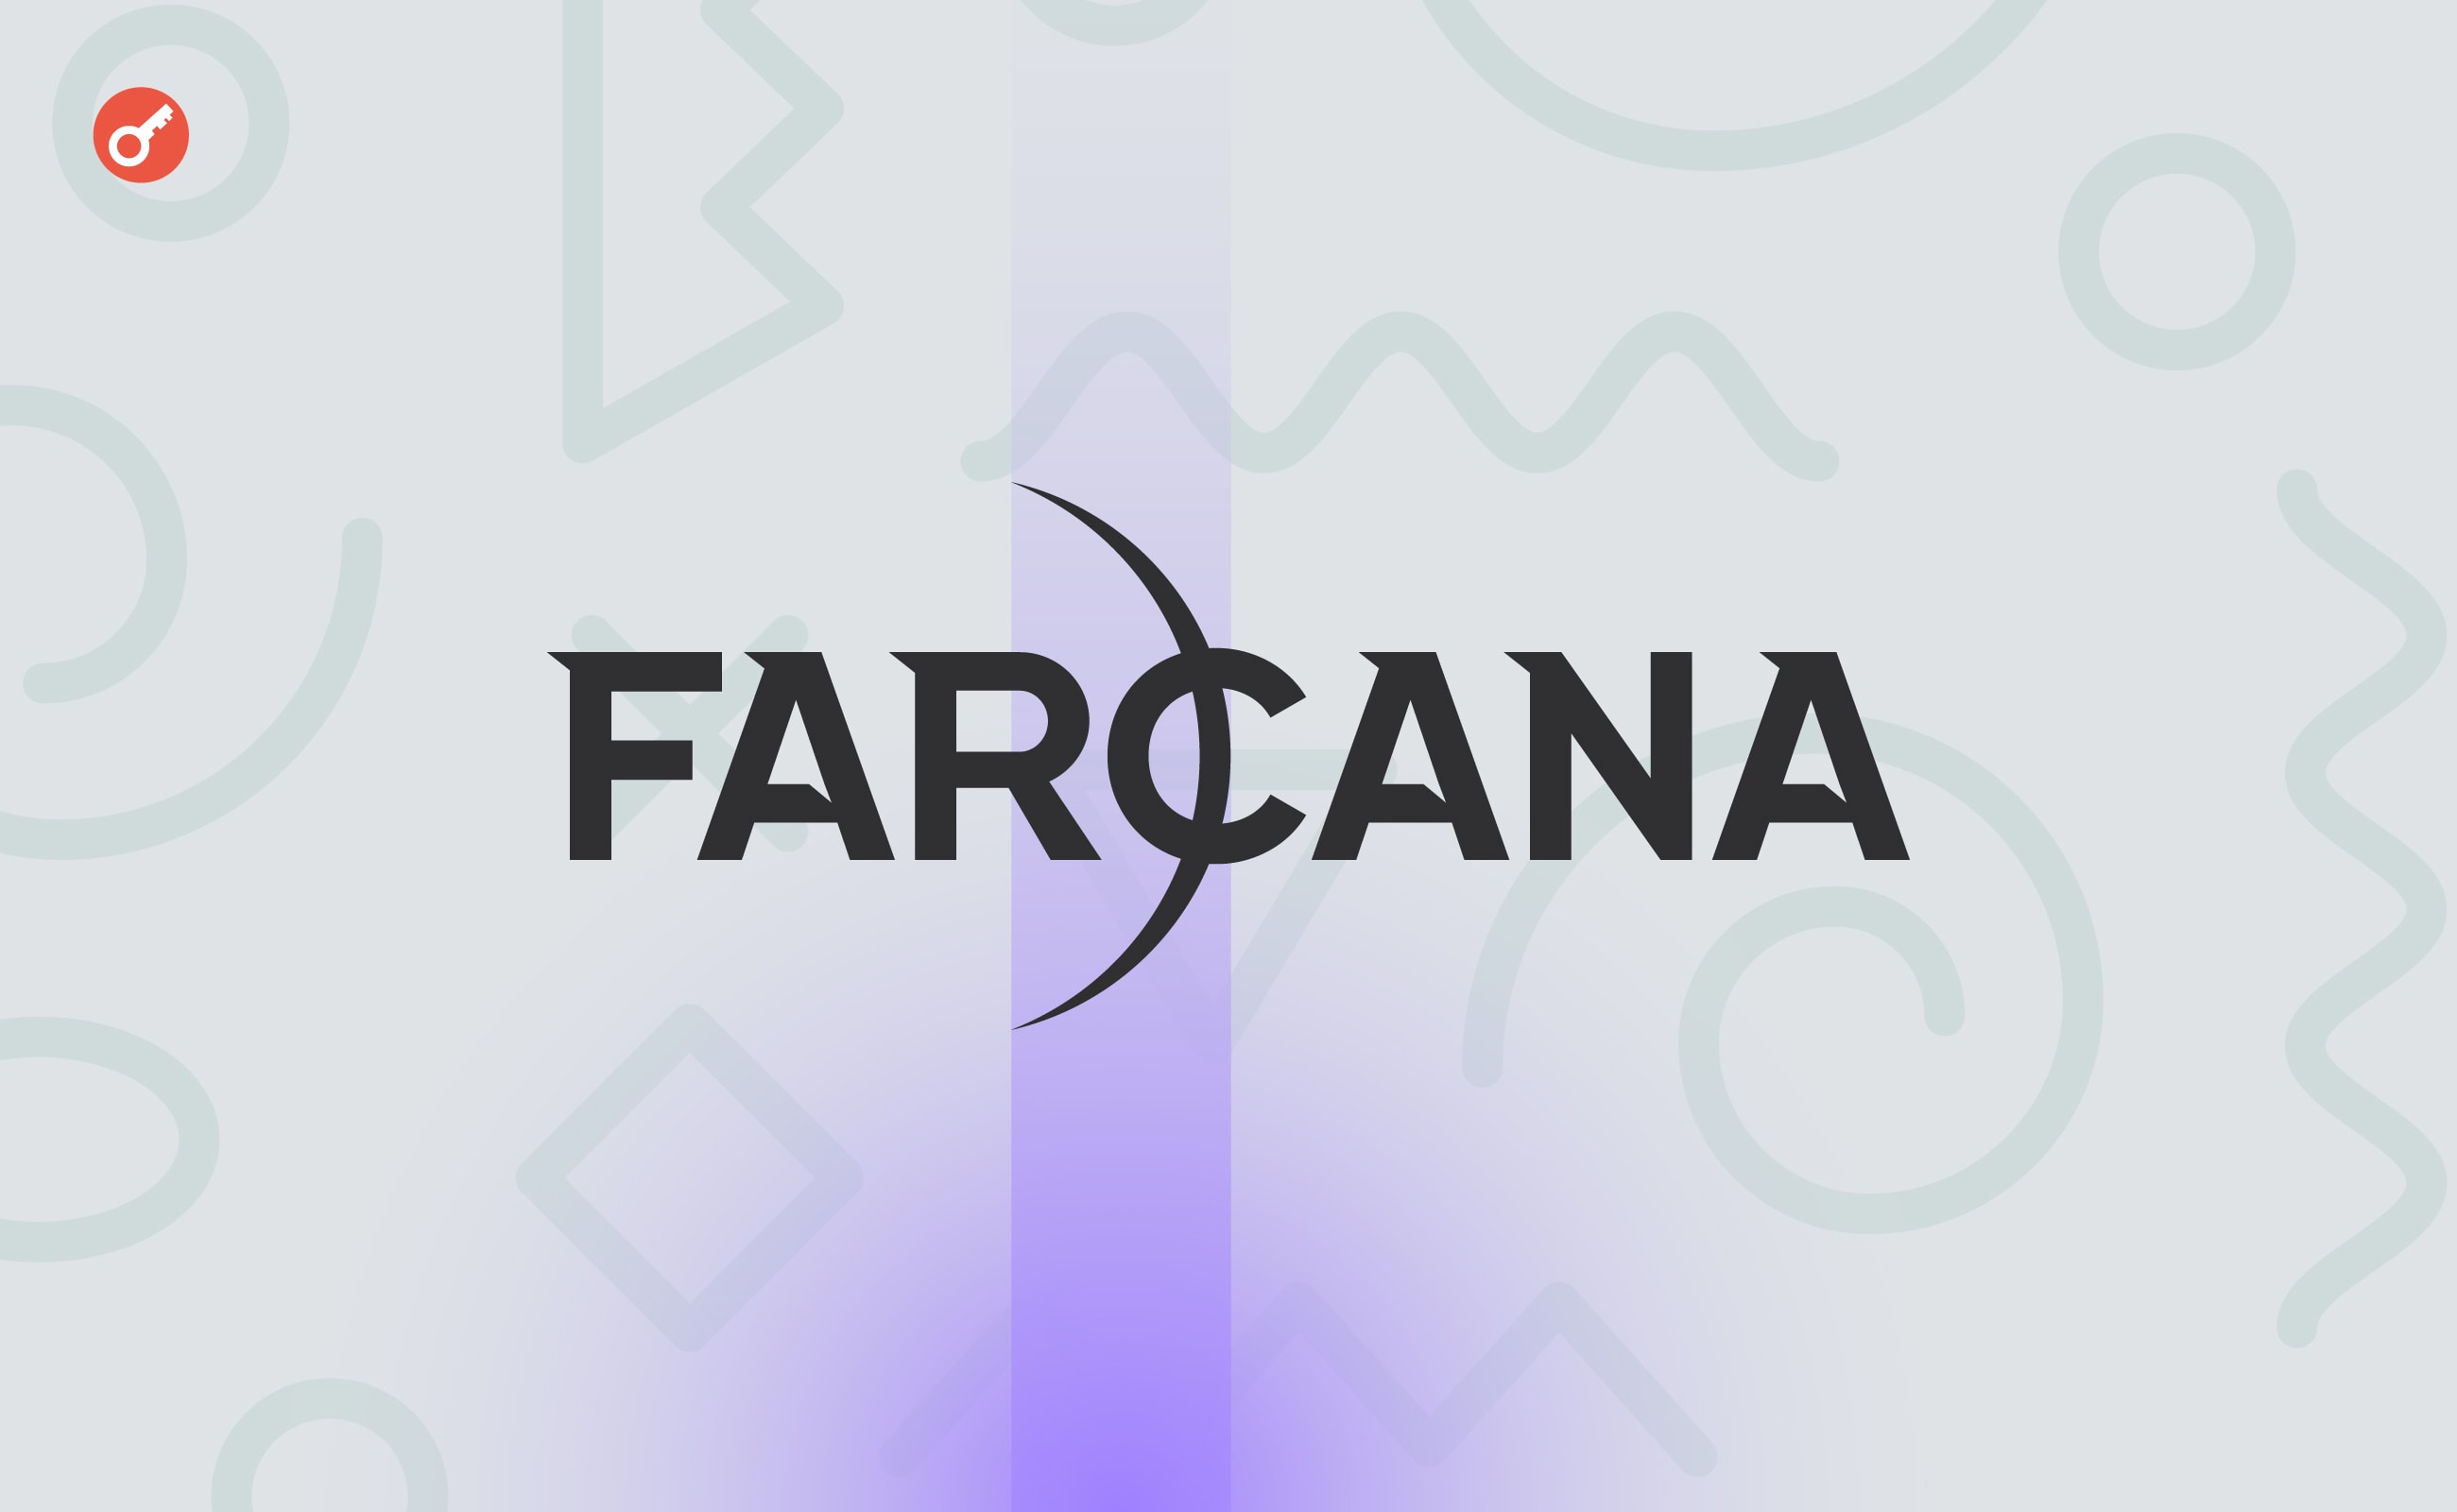 Ігровий проєкт Farcana c біткоїн-нагородами залучив $10 млн інвестицій. Головний колаж новини.